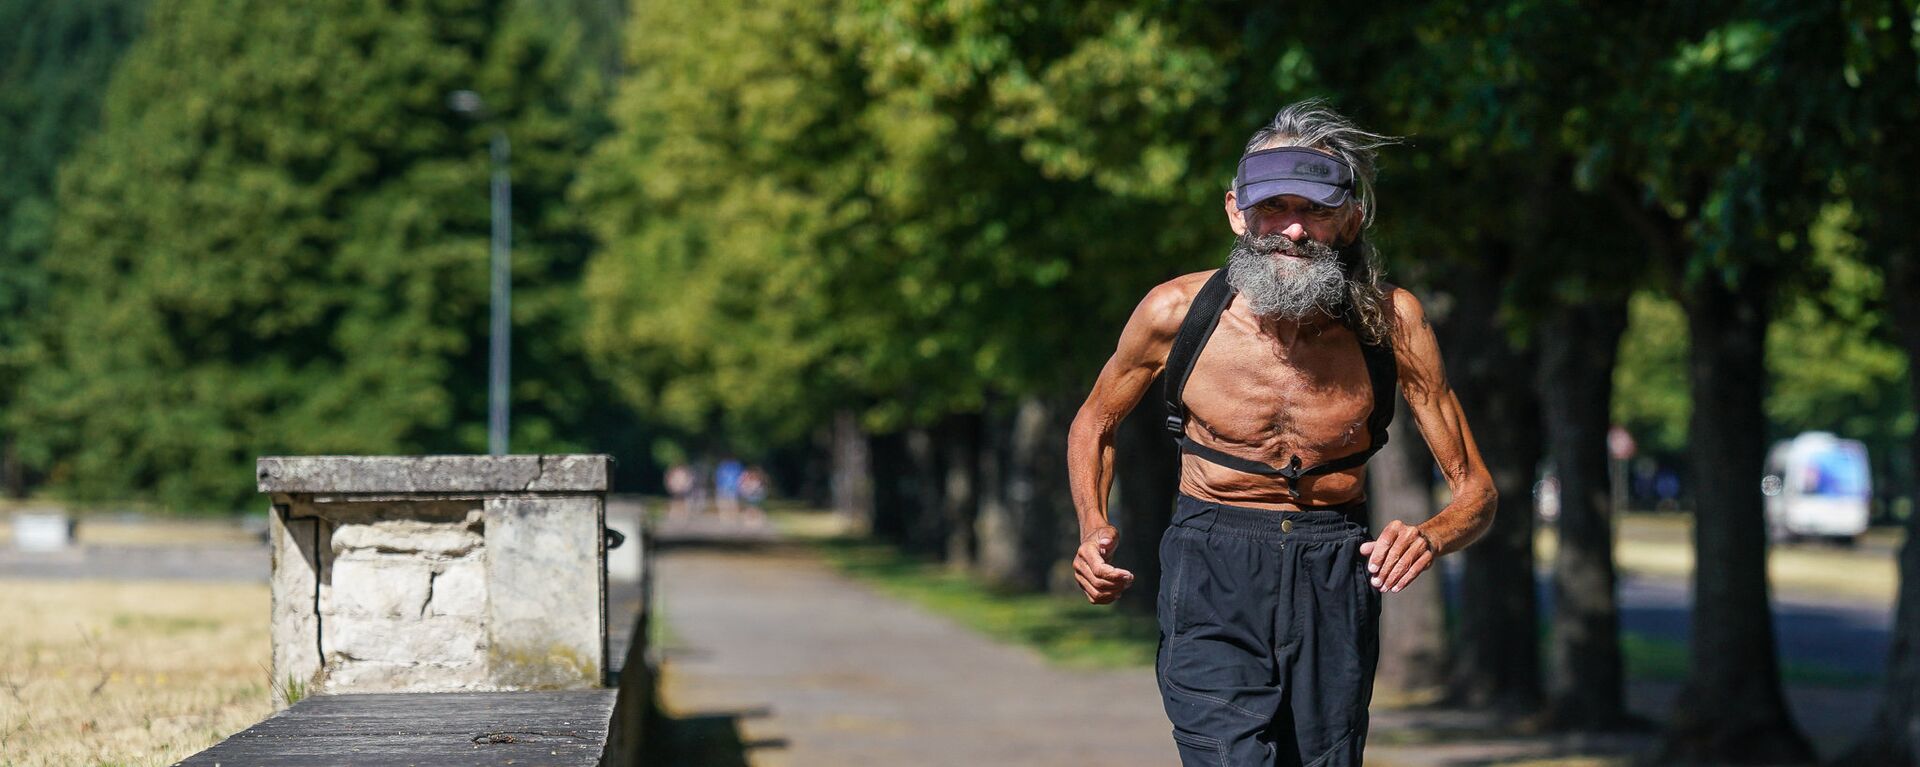 Пожилой человек бежит по парку - Sputnik Латвия, 1920, 28.01.2021